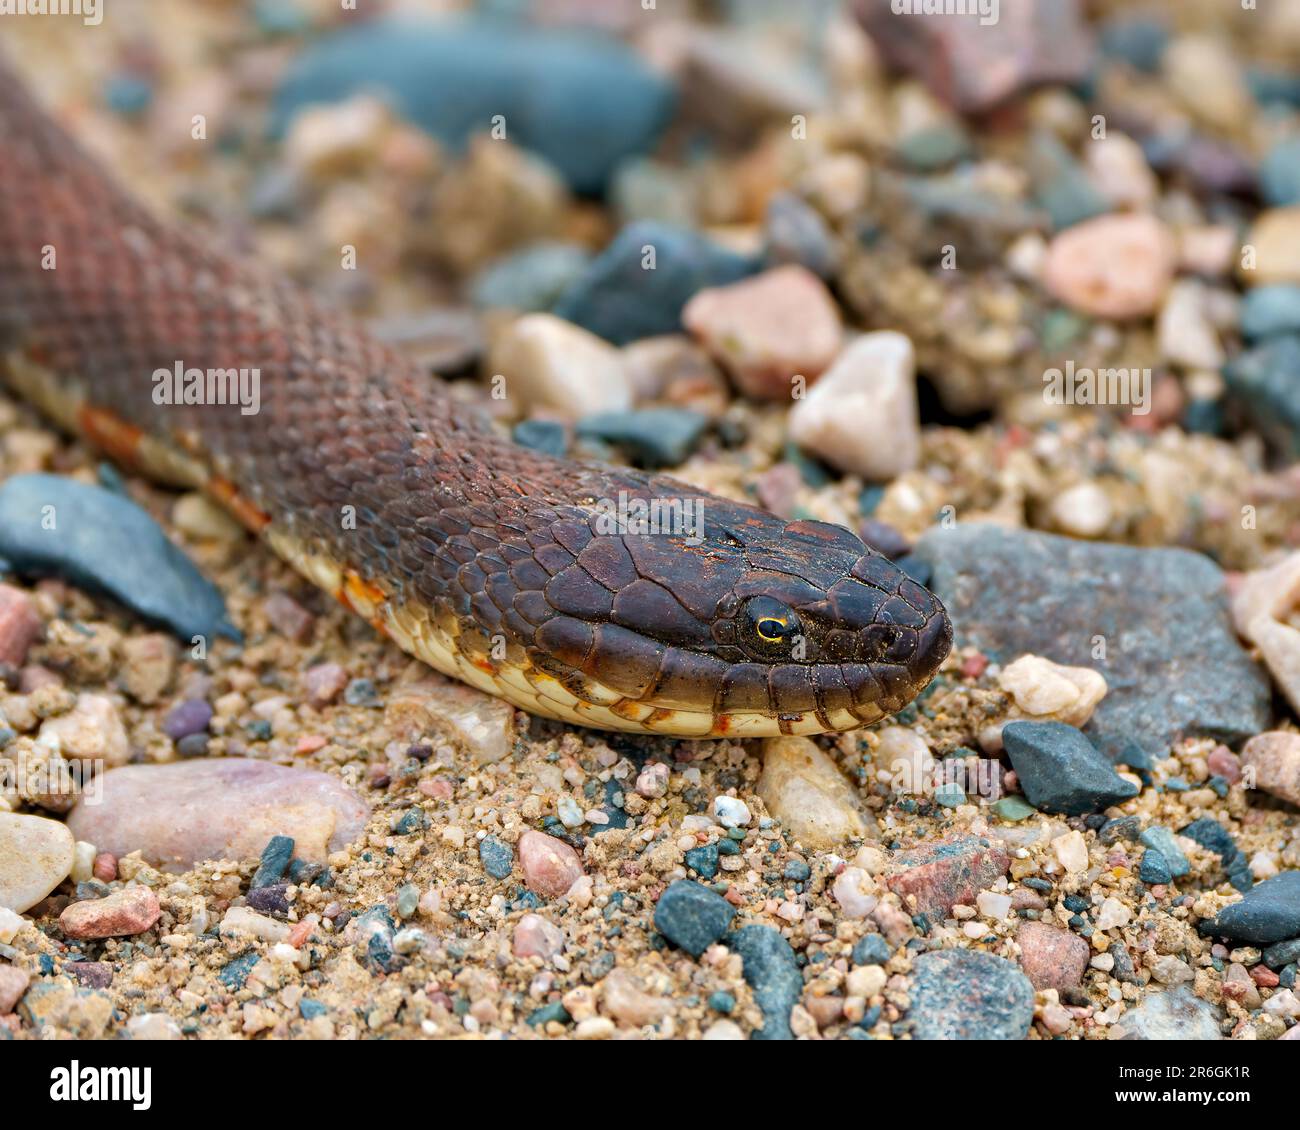 Testa di serpente ripresa primo piano vista del profilo che striscio su rocce di ghiaia con un nel suo ambiente e habitat circostante. Foto Stock